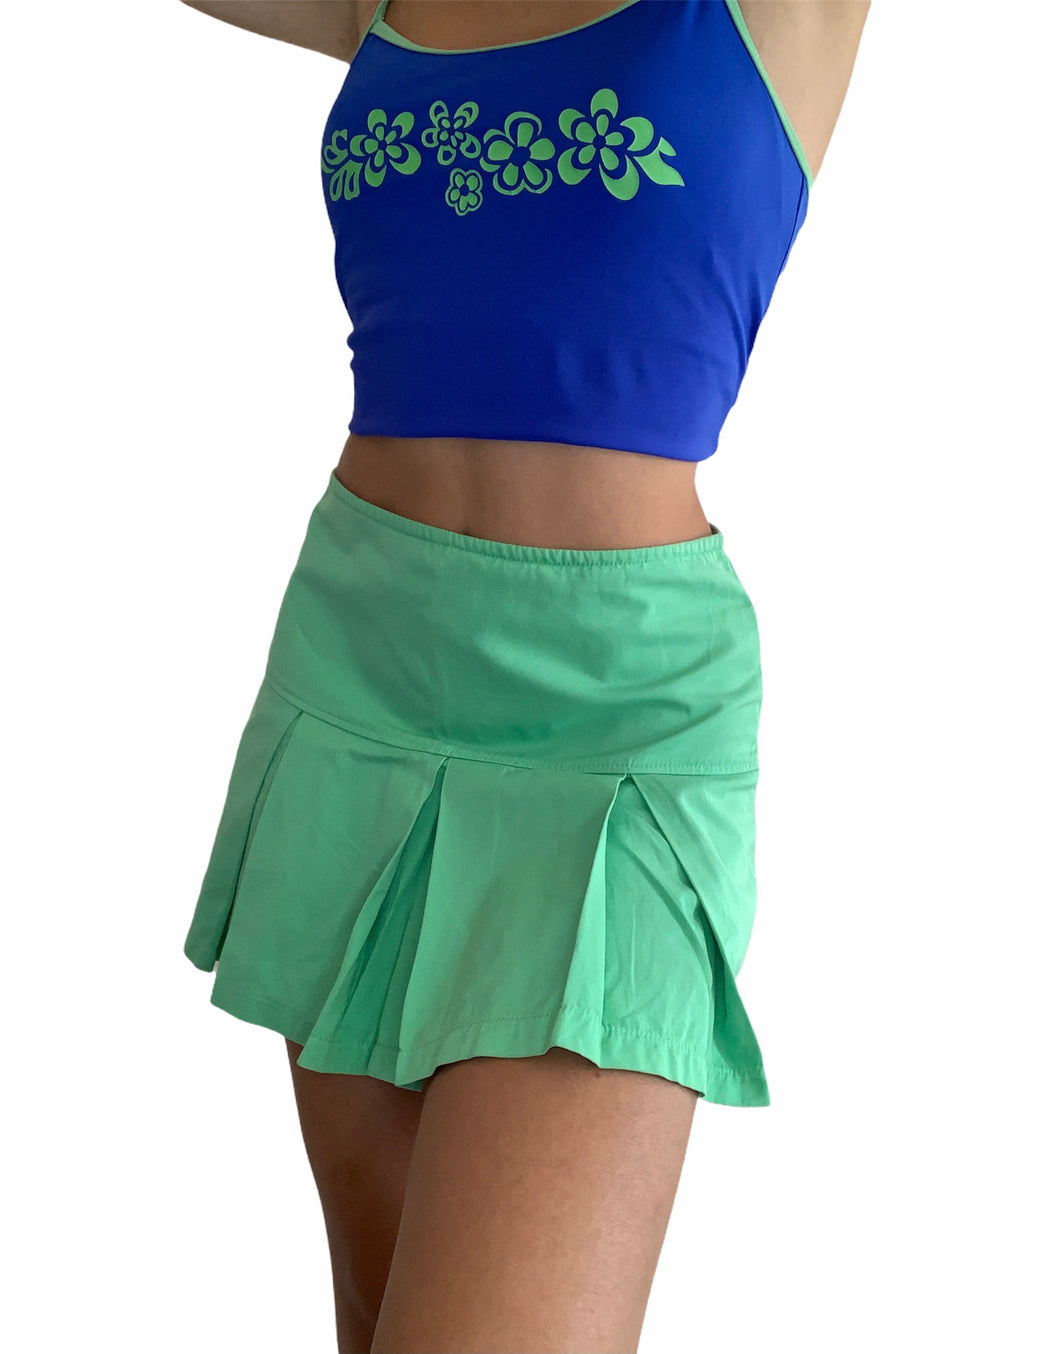 Authentic Benetton tennis skirt